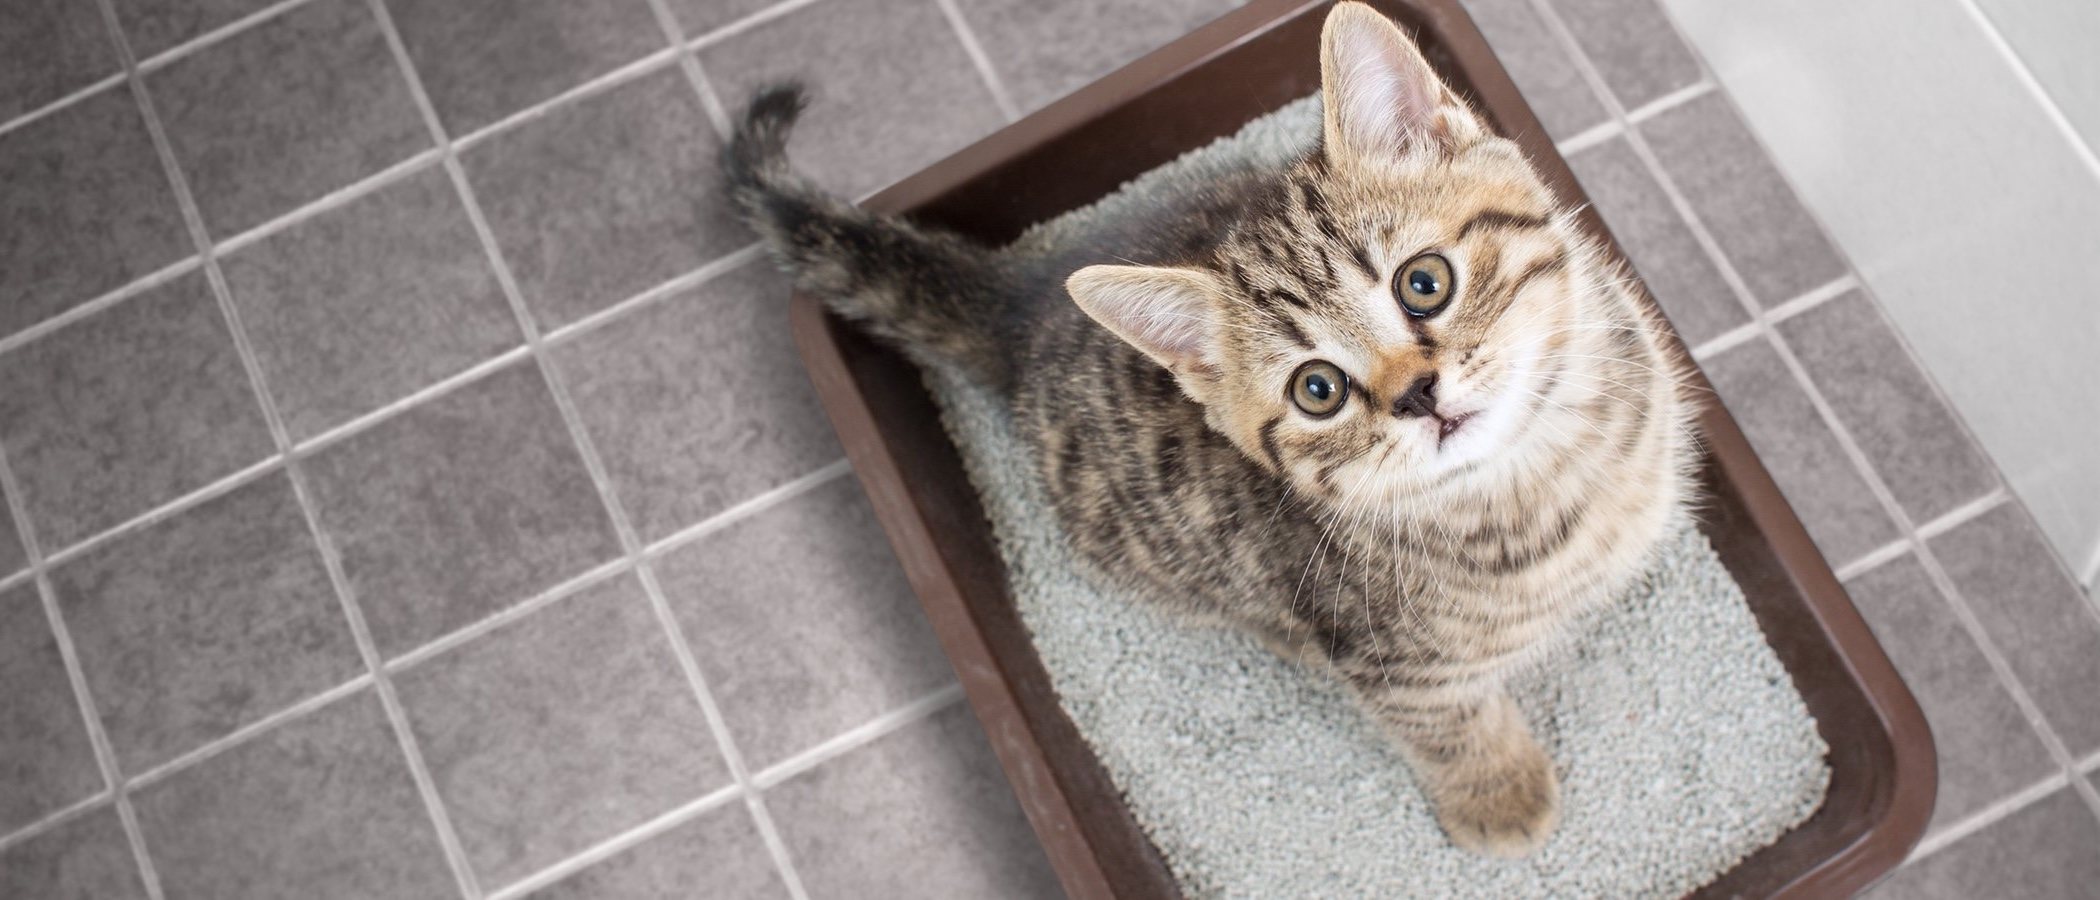 Infección de orina en gatos: Síntomas y tratamientos